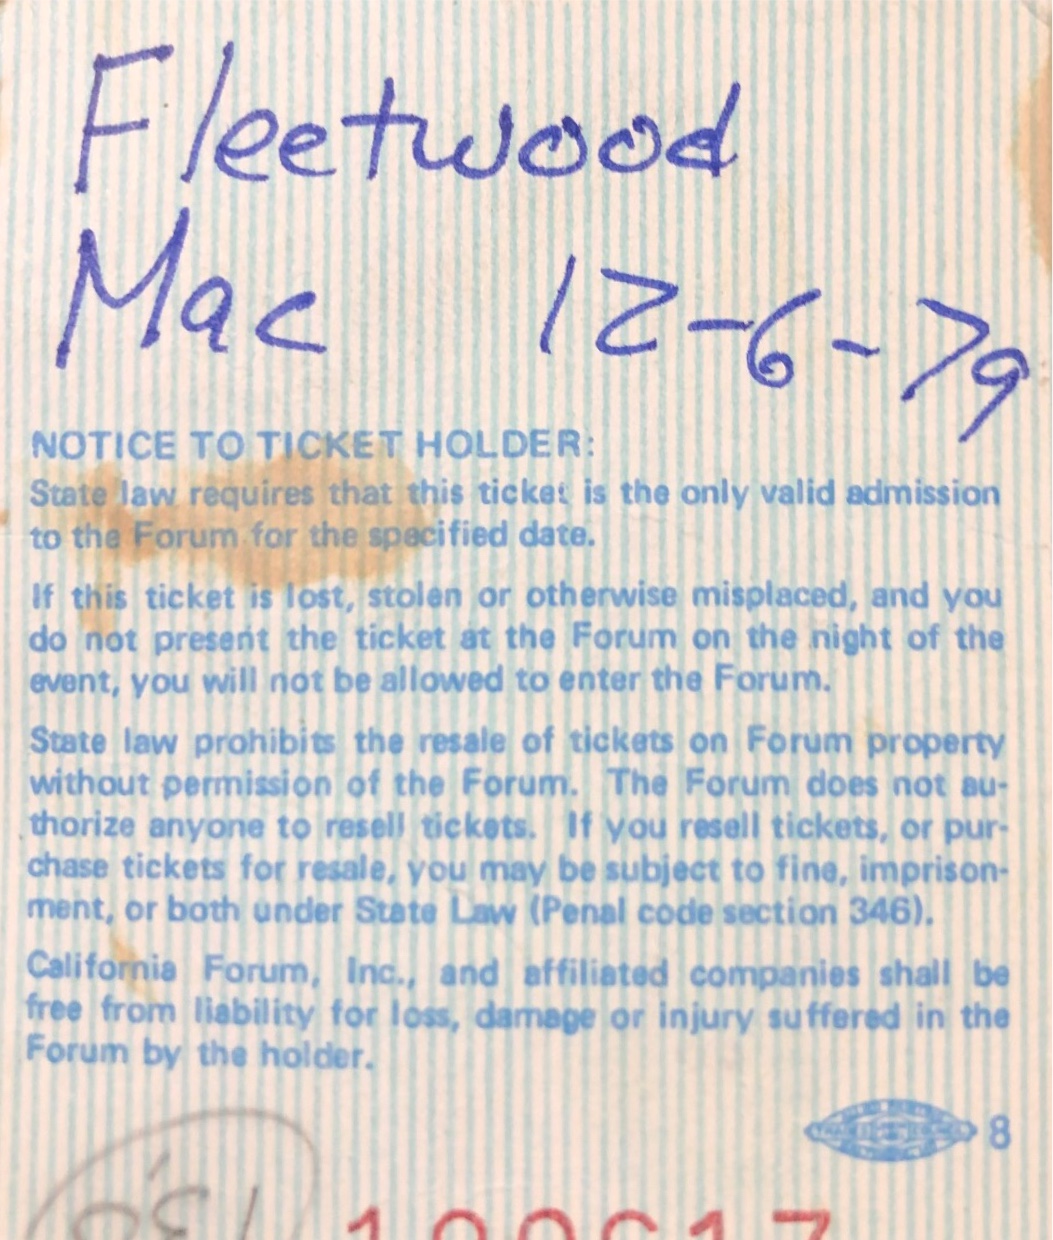 FleetwoodMac1979-12-06TheForumInglewoodCA (4).jpg